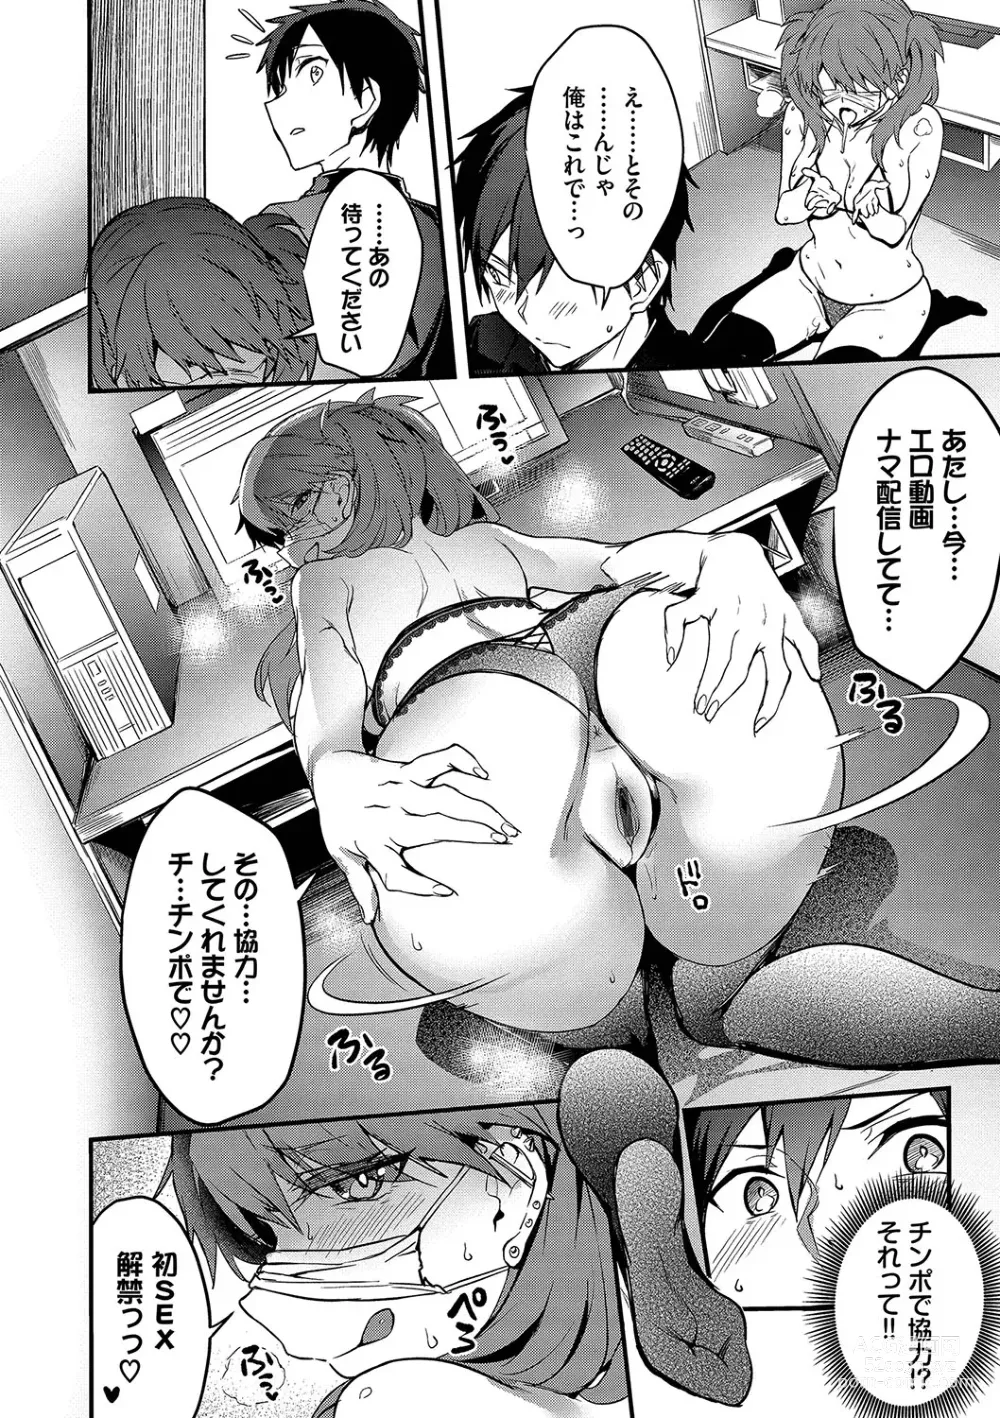 Page 19 of manga Bitch Bitch